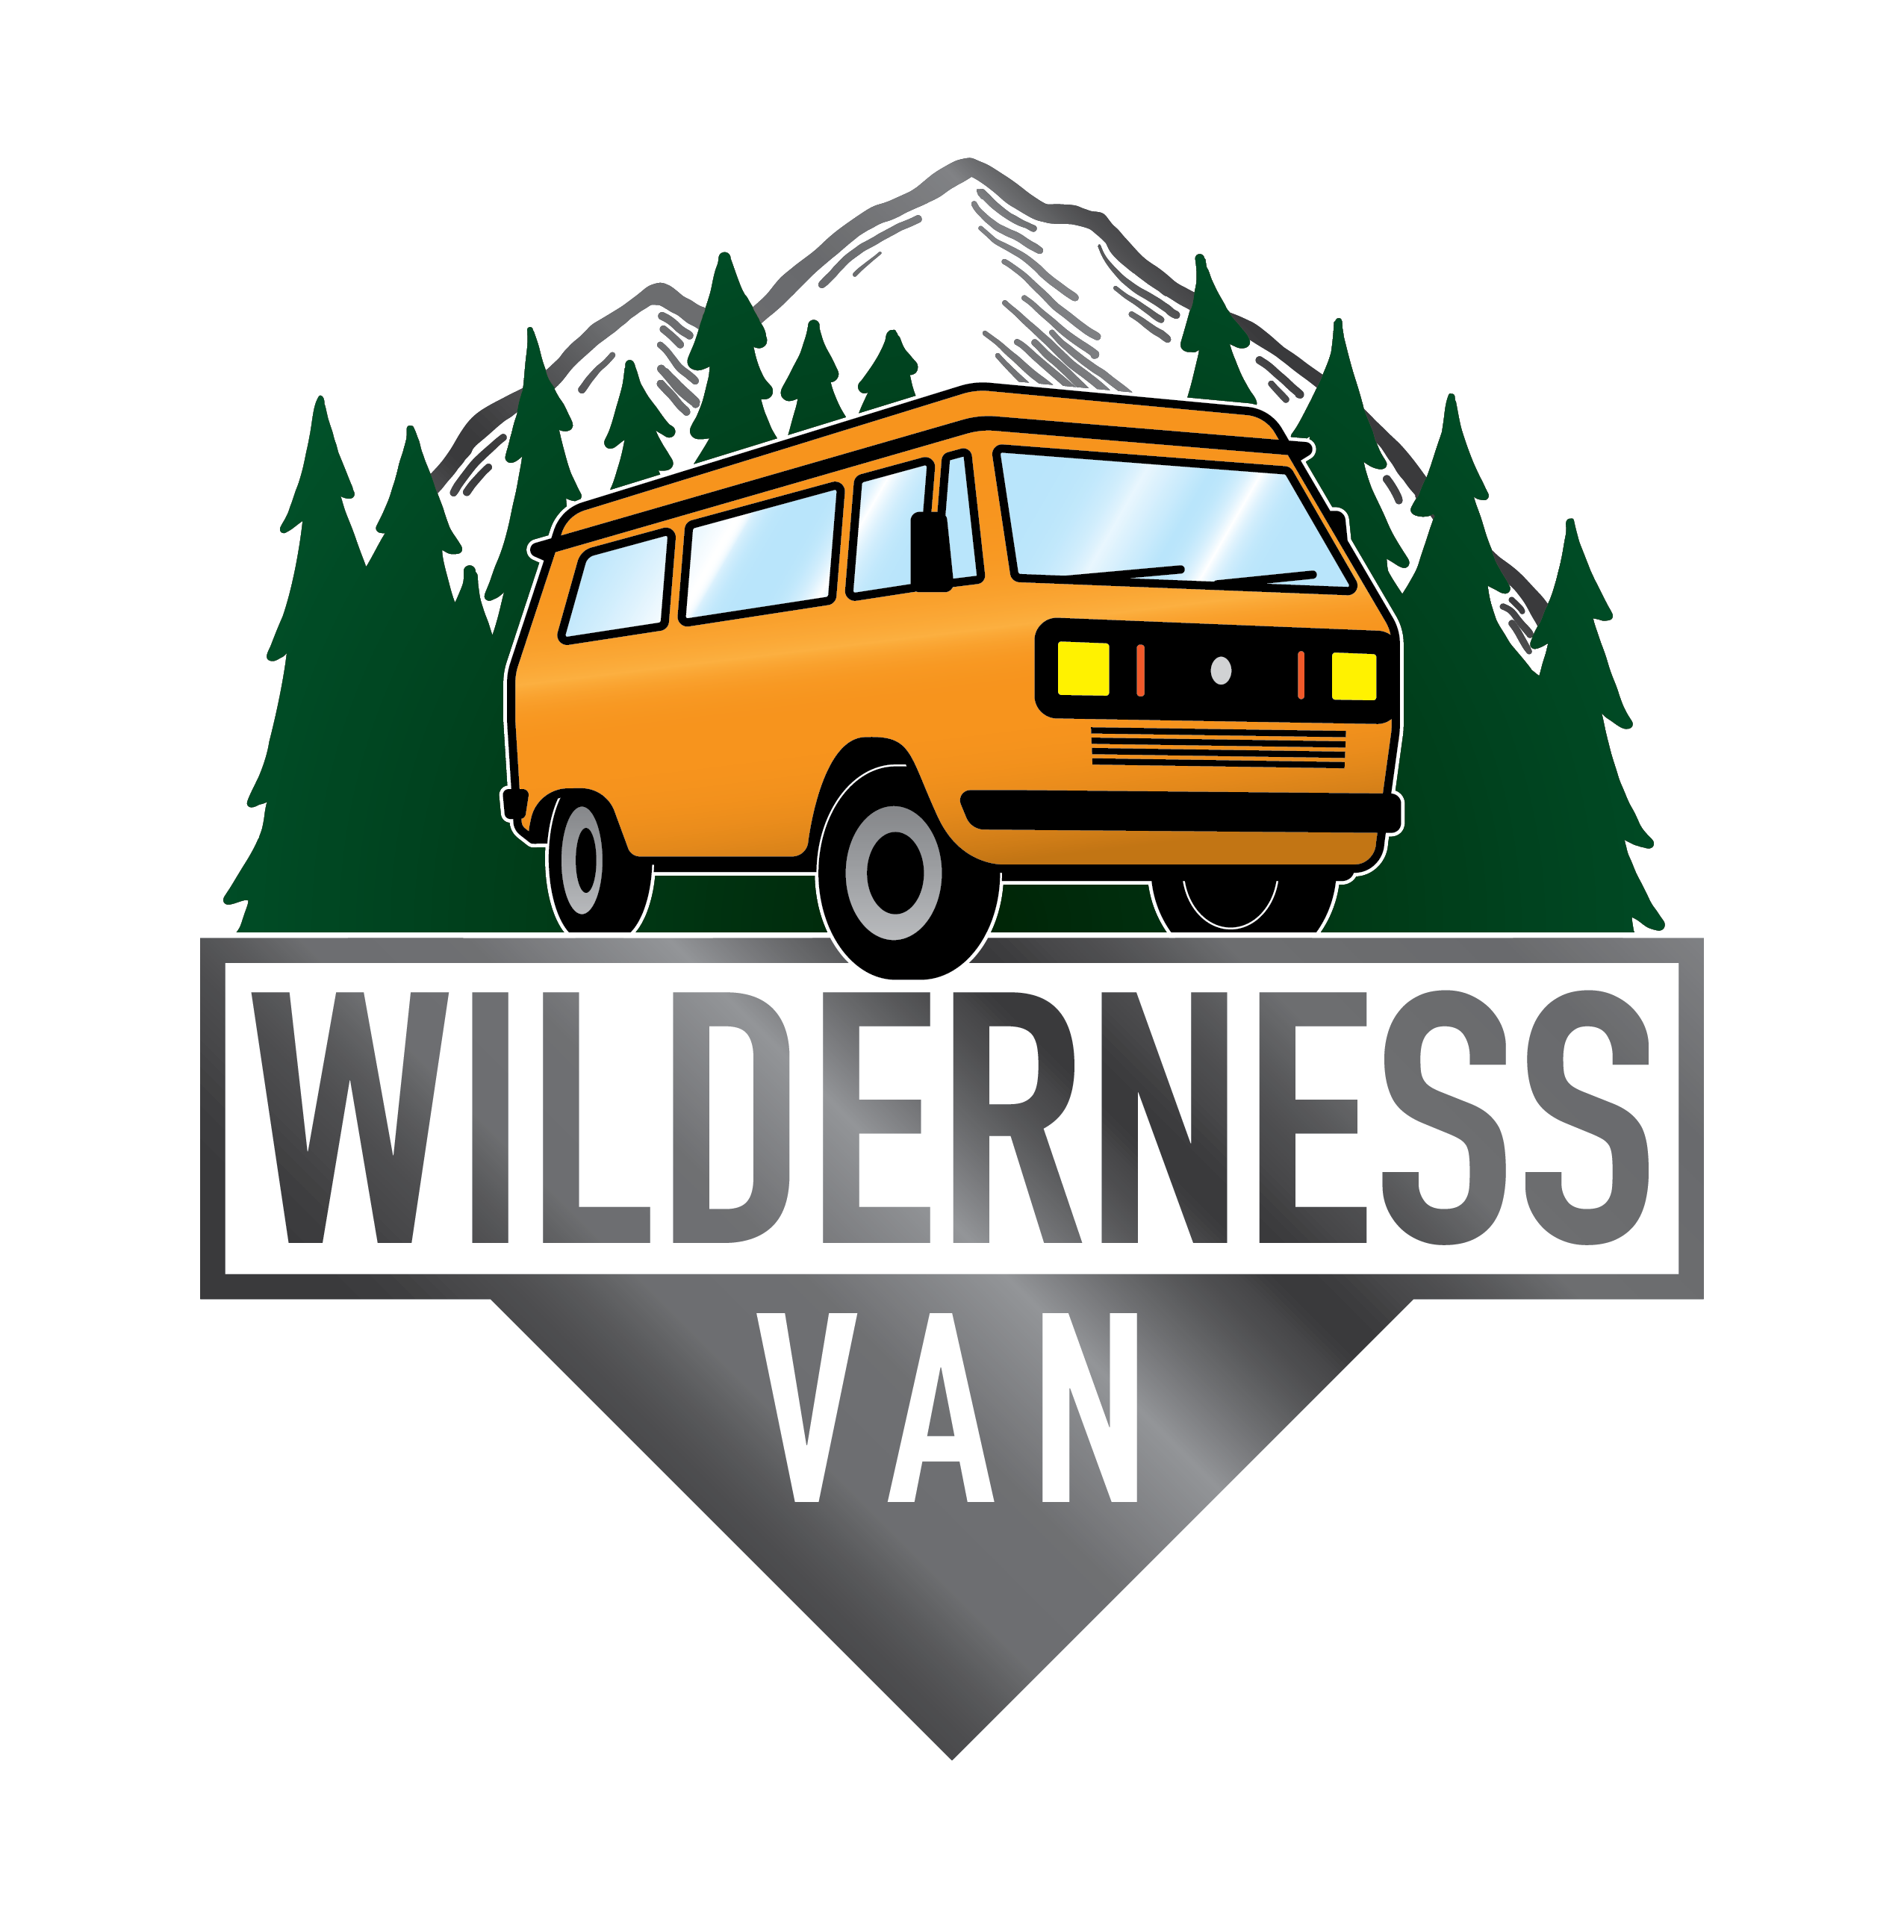 Wilderness Van